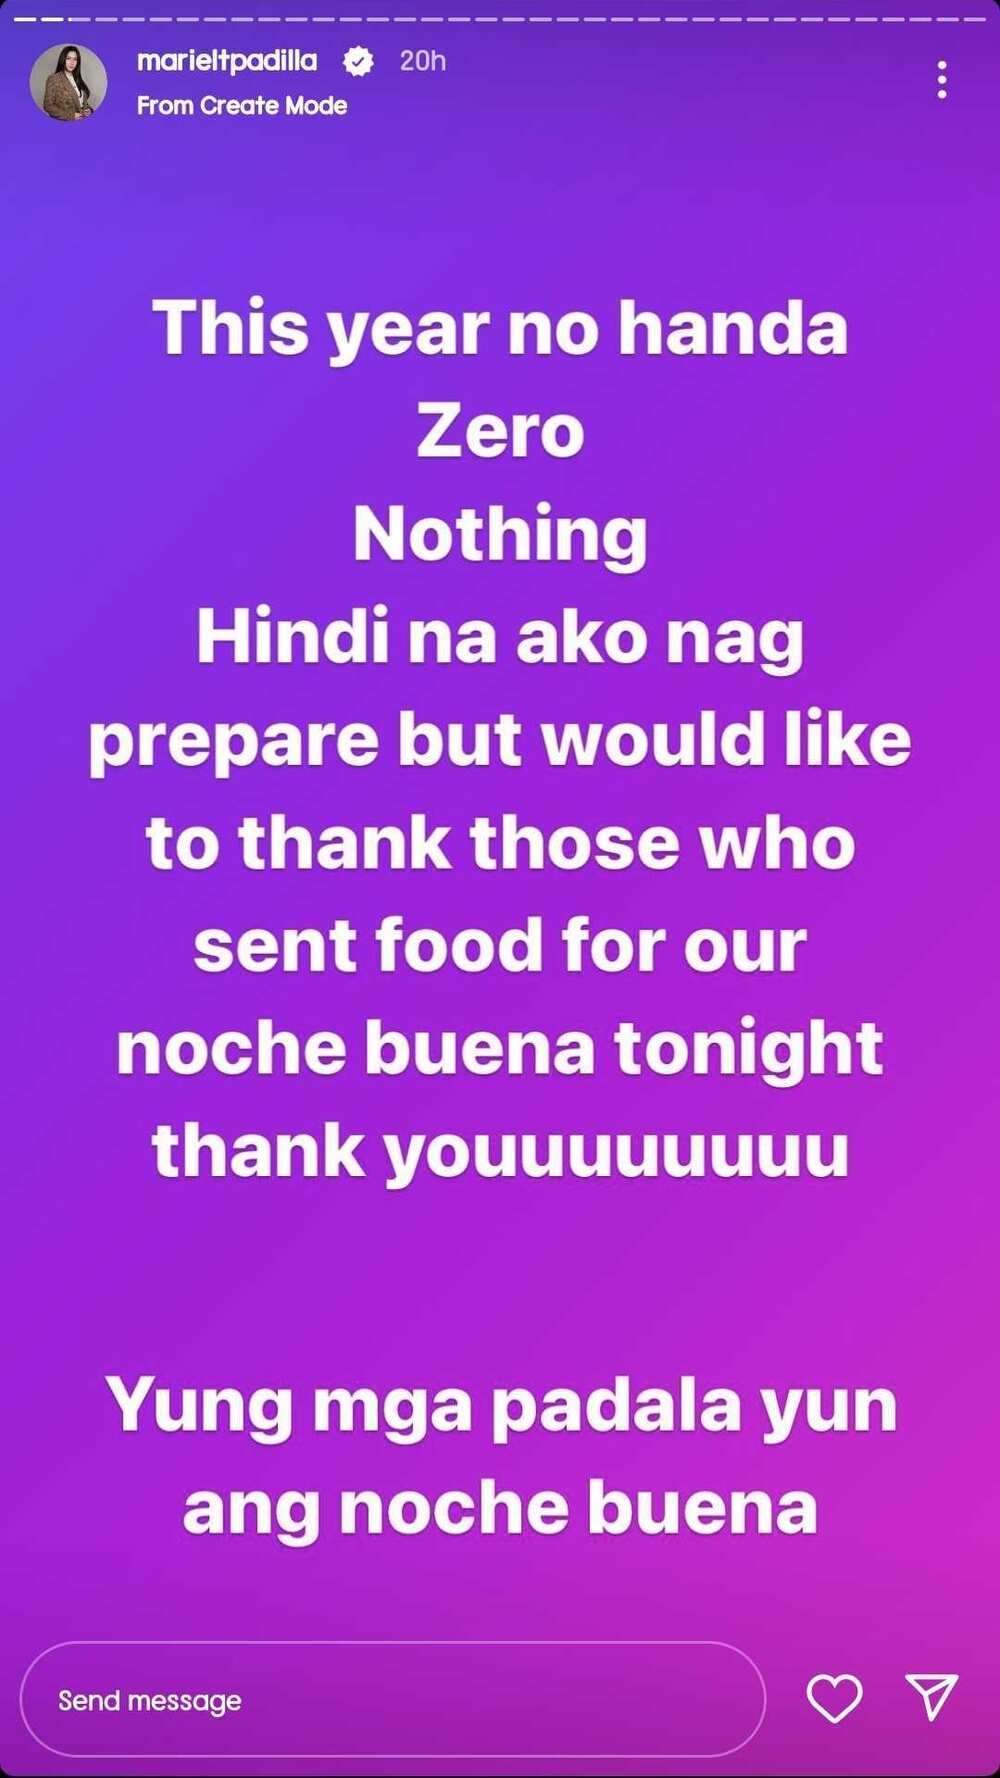 Mariel Padilla sa kanilang Noche Buena nitong taon: "No handa, zero, nothing"